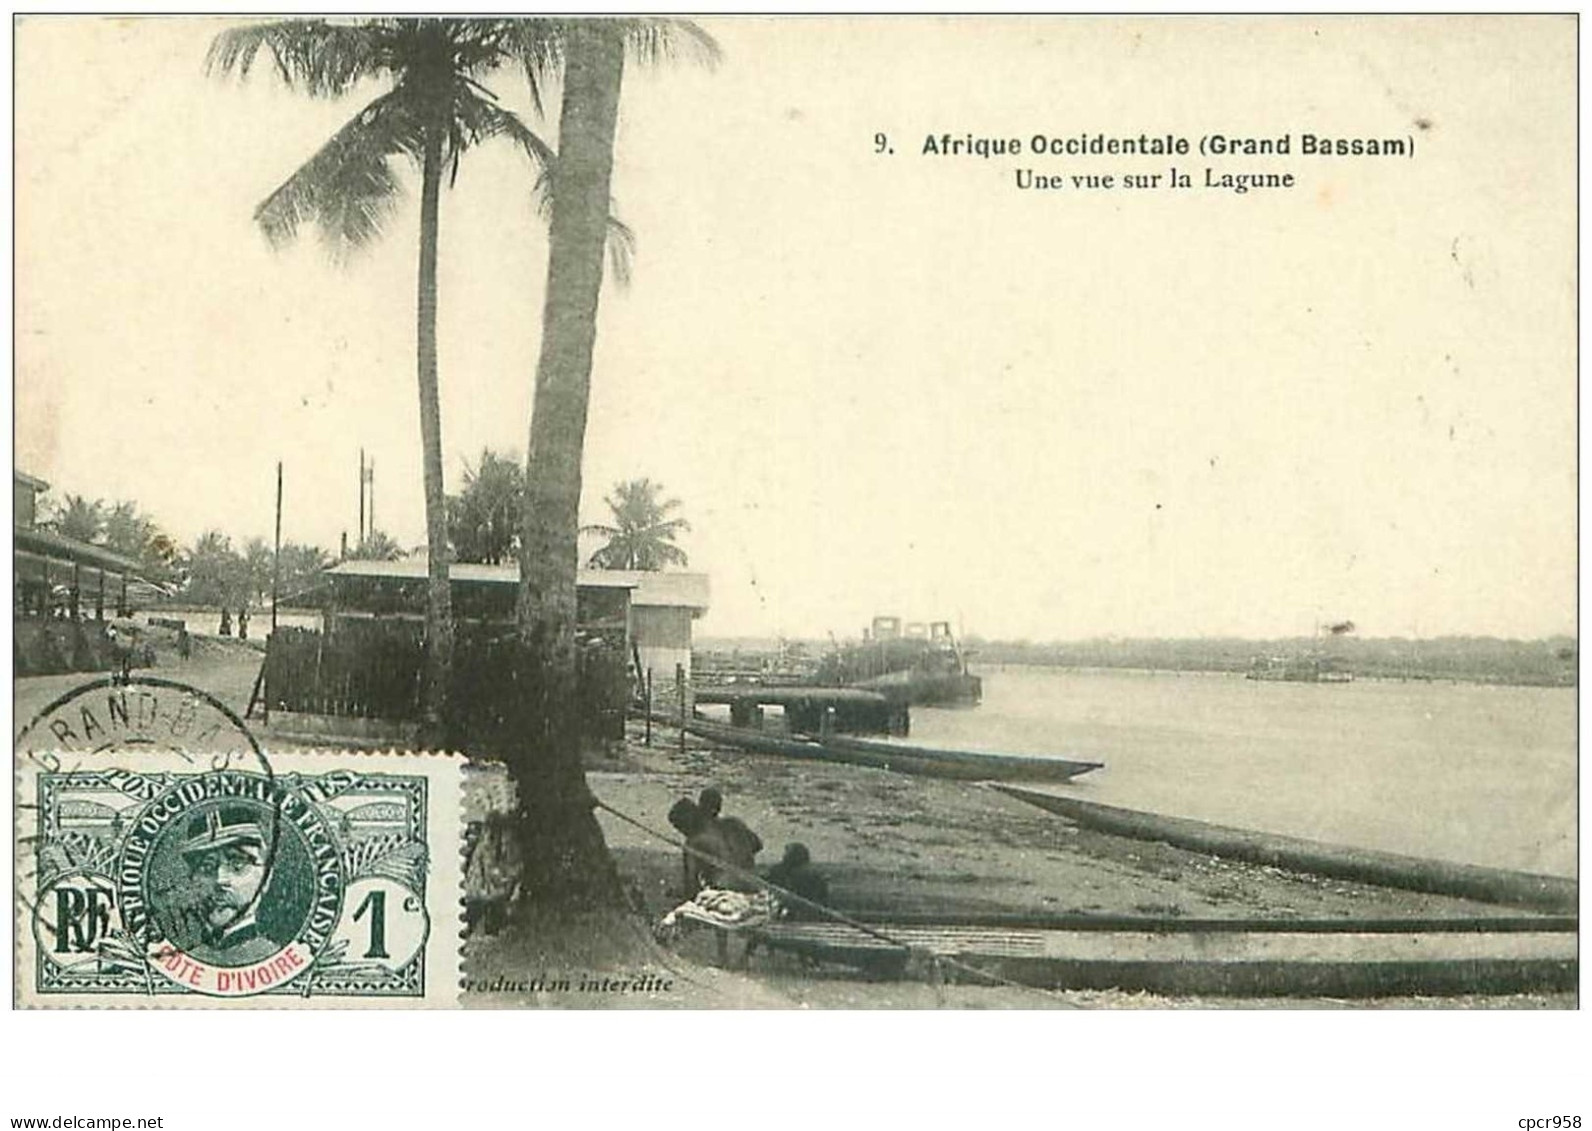 Cote D Ivoire. N°35373.une Vue Sur La Lagrune. Afrique Occidentale.grand Bassam - Elfenbeinküste